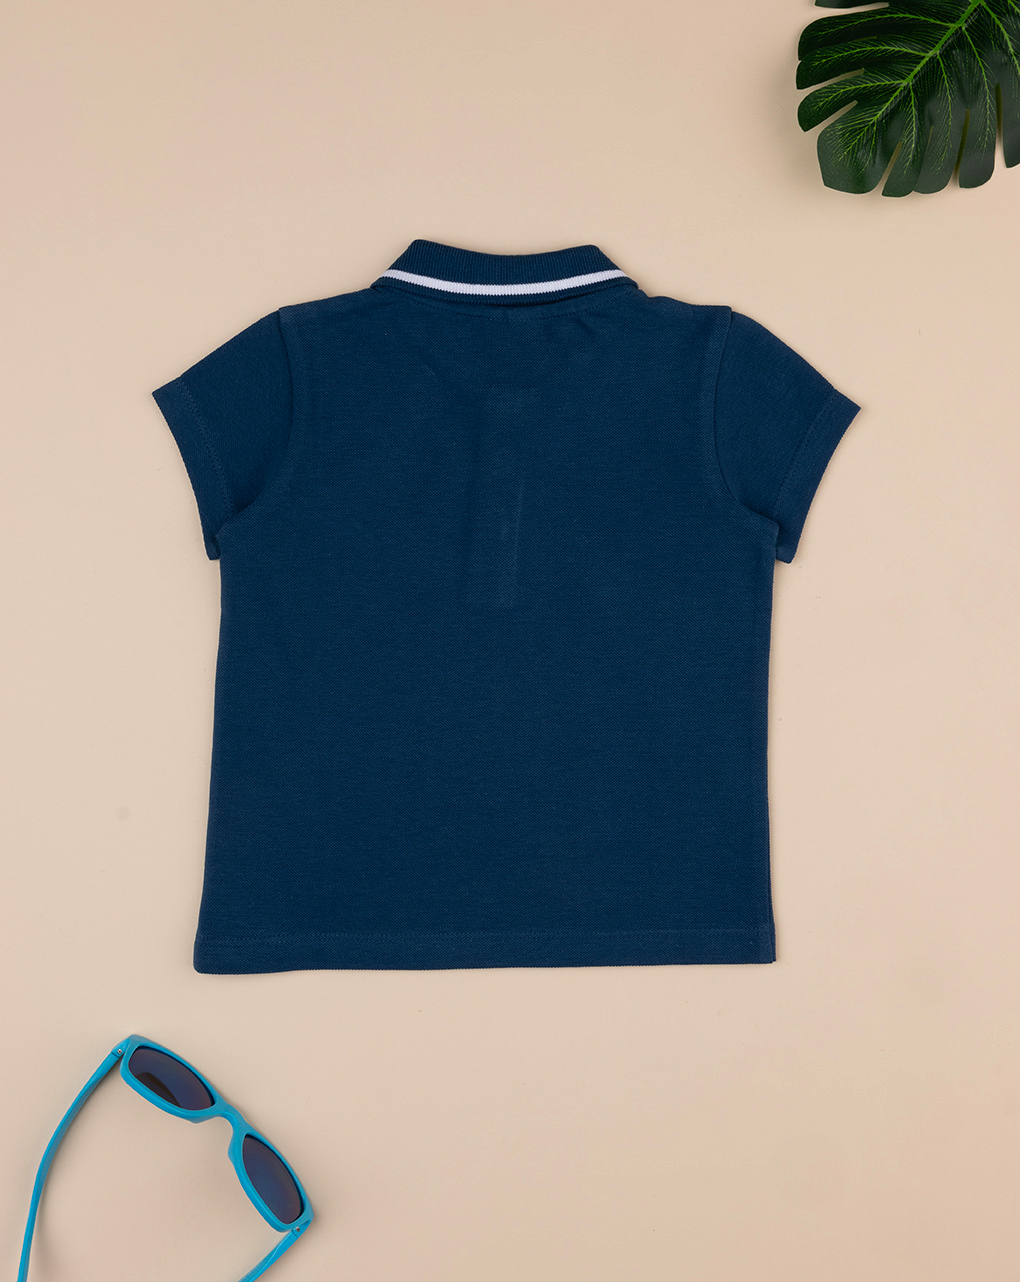 βρεφικό t-shirt πόλο μπλε "άπειρο" για αγόρι - Prénatal